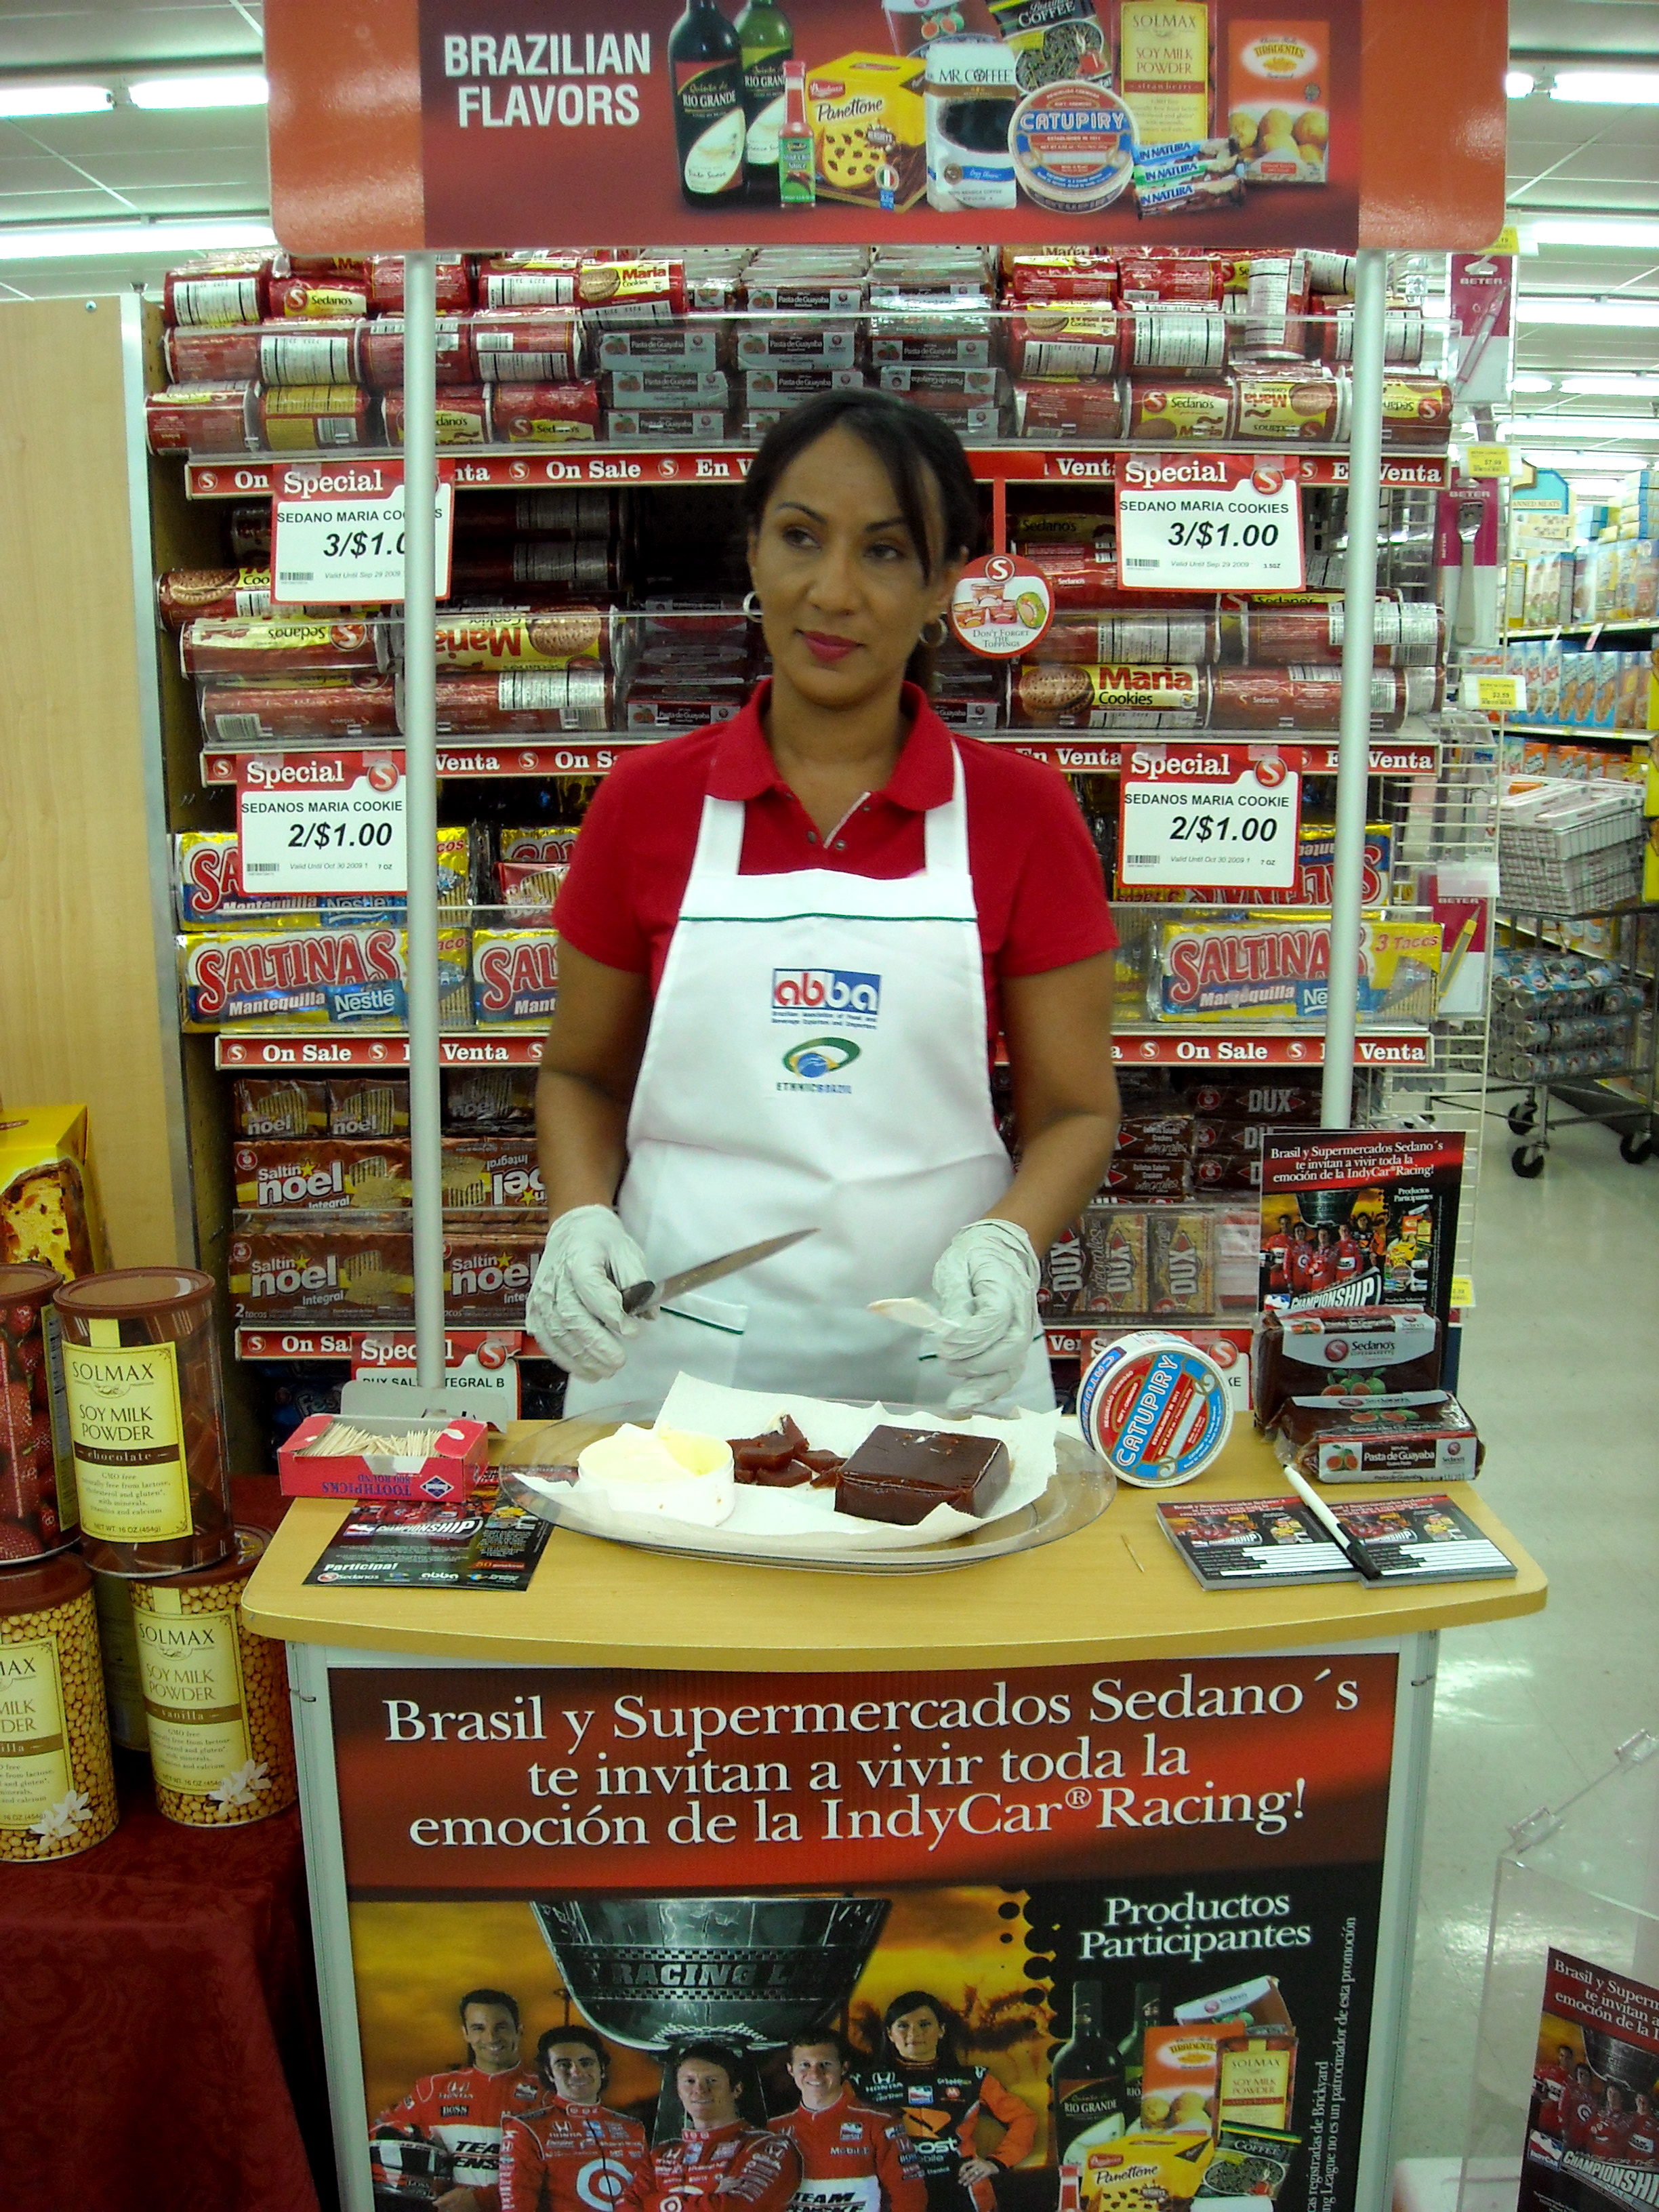 Ethnic Brazil and Sedano's Supermarkets Celebrate Brazilian Flavors